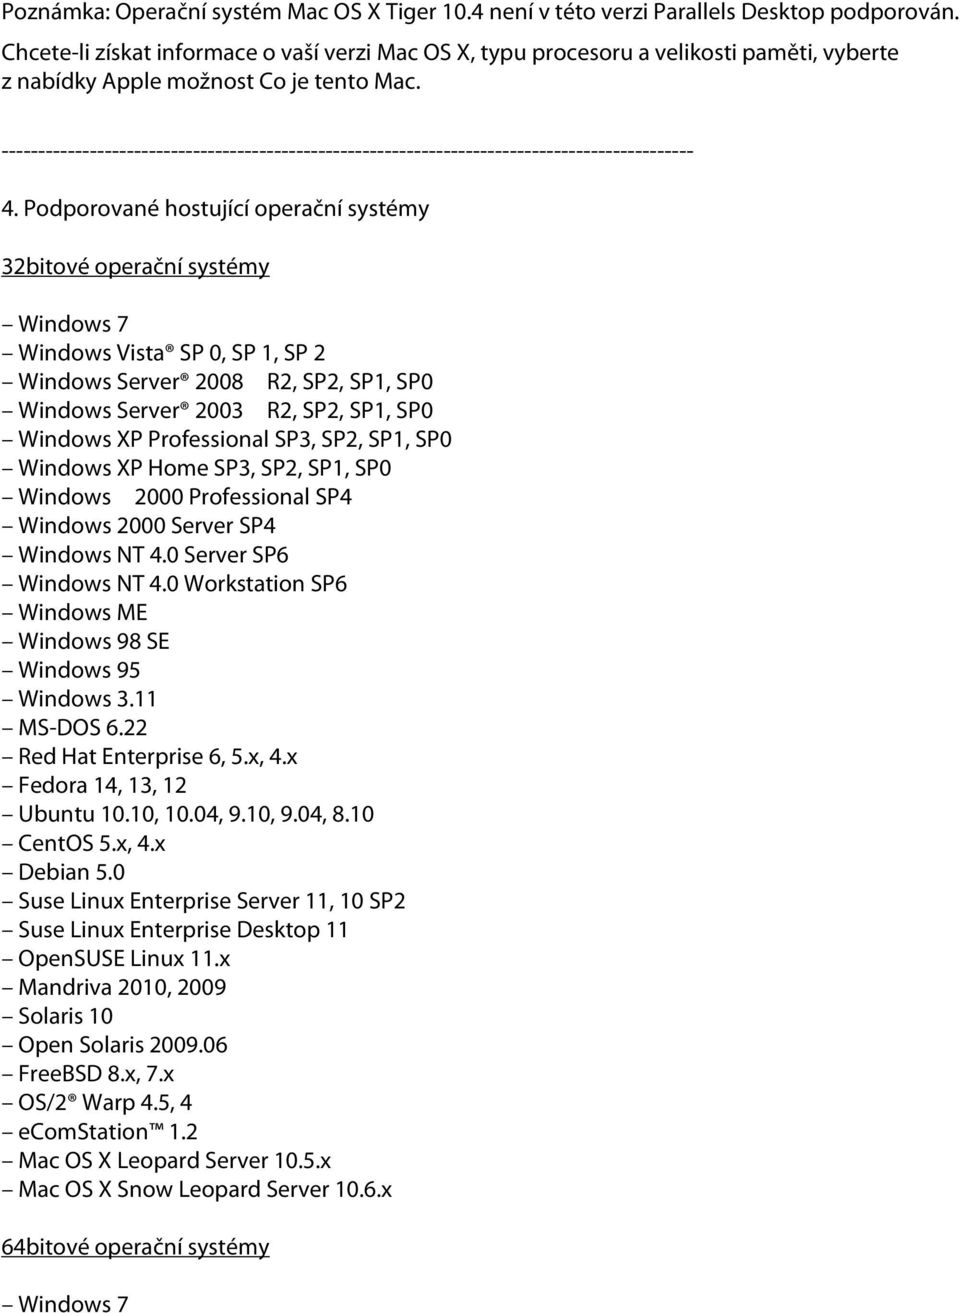 Podporované hostující operační systémy 32bitové operační systémy Windows 7 Windows Vista SP 0, SP 1, SP 2 Windows Server 2008 R2, SP2, SP1, SP0 Windows Server 2003 R2, SP2, SP1, SP0 Windows XP